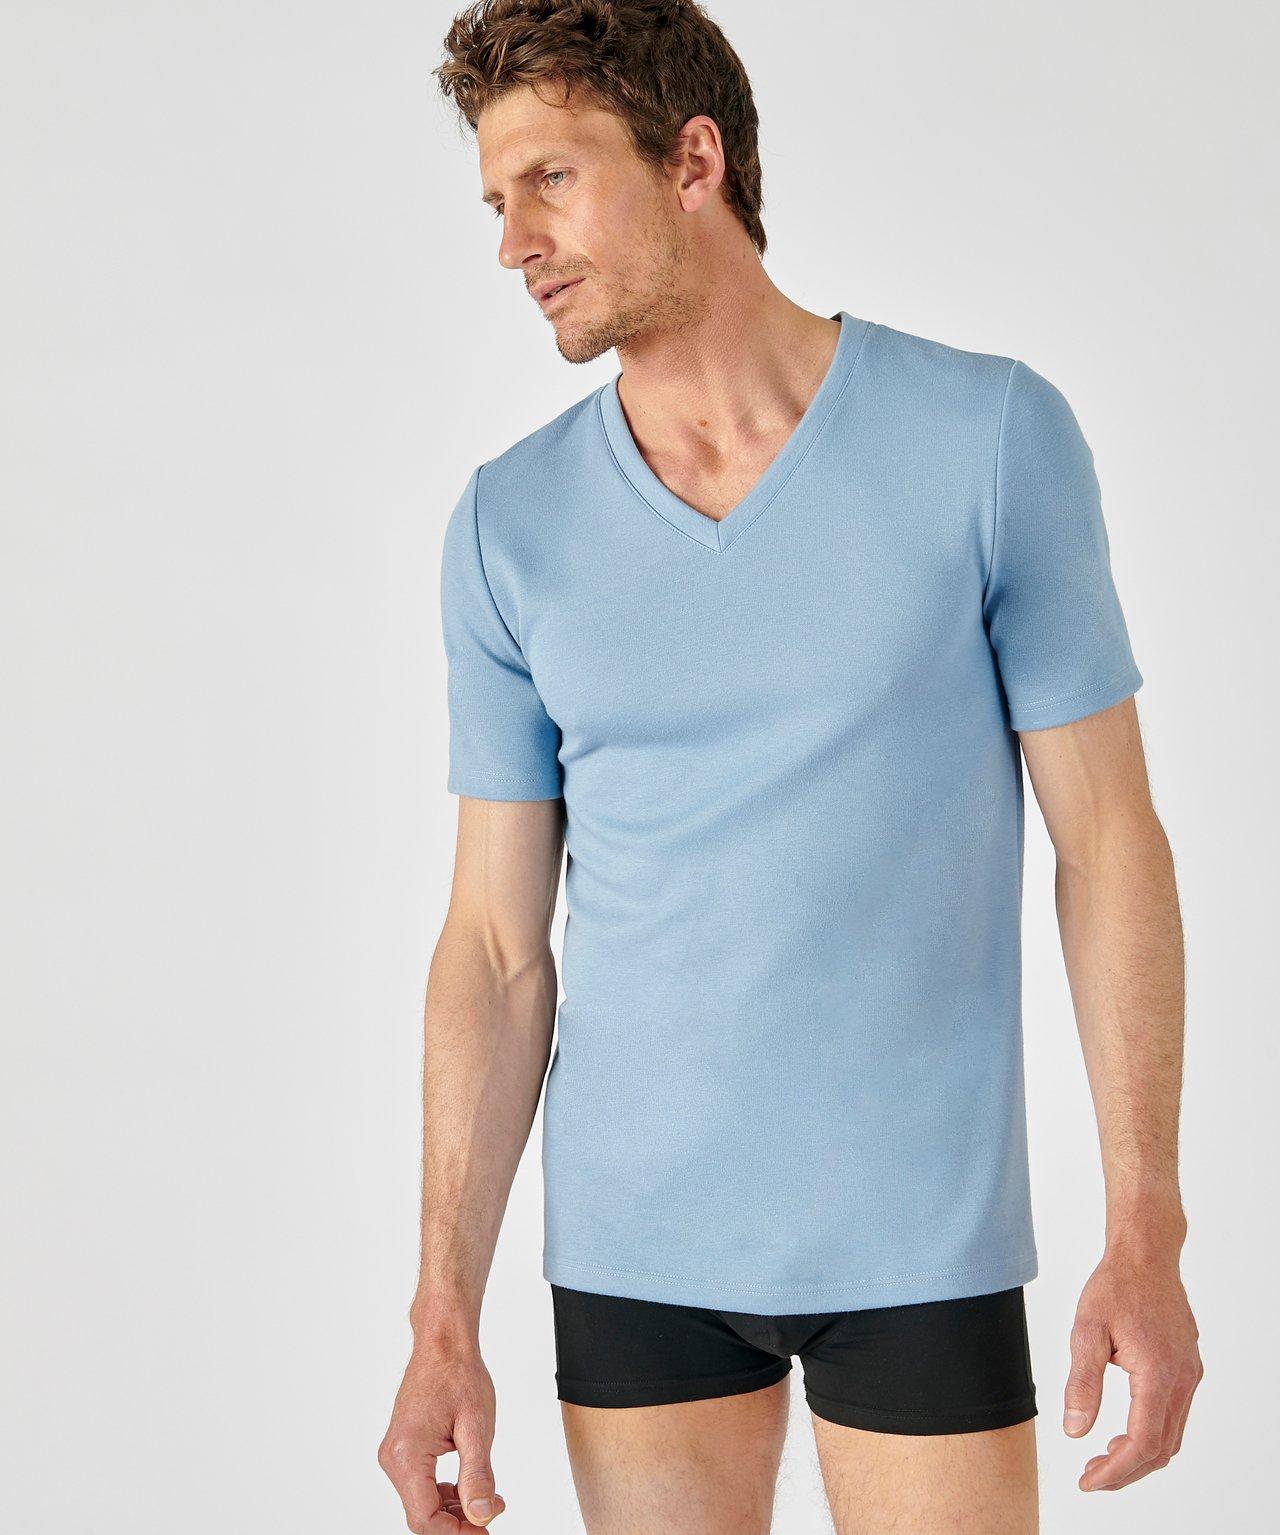 T-shirt Mit V-ausschnitt, Wärmegrad Medium 3. Herren Blau XL von Damart